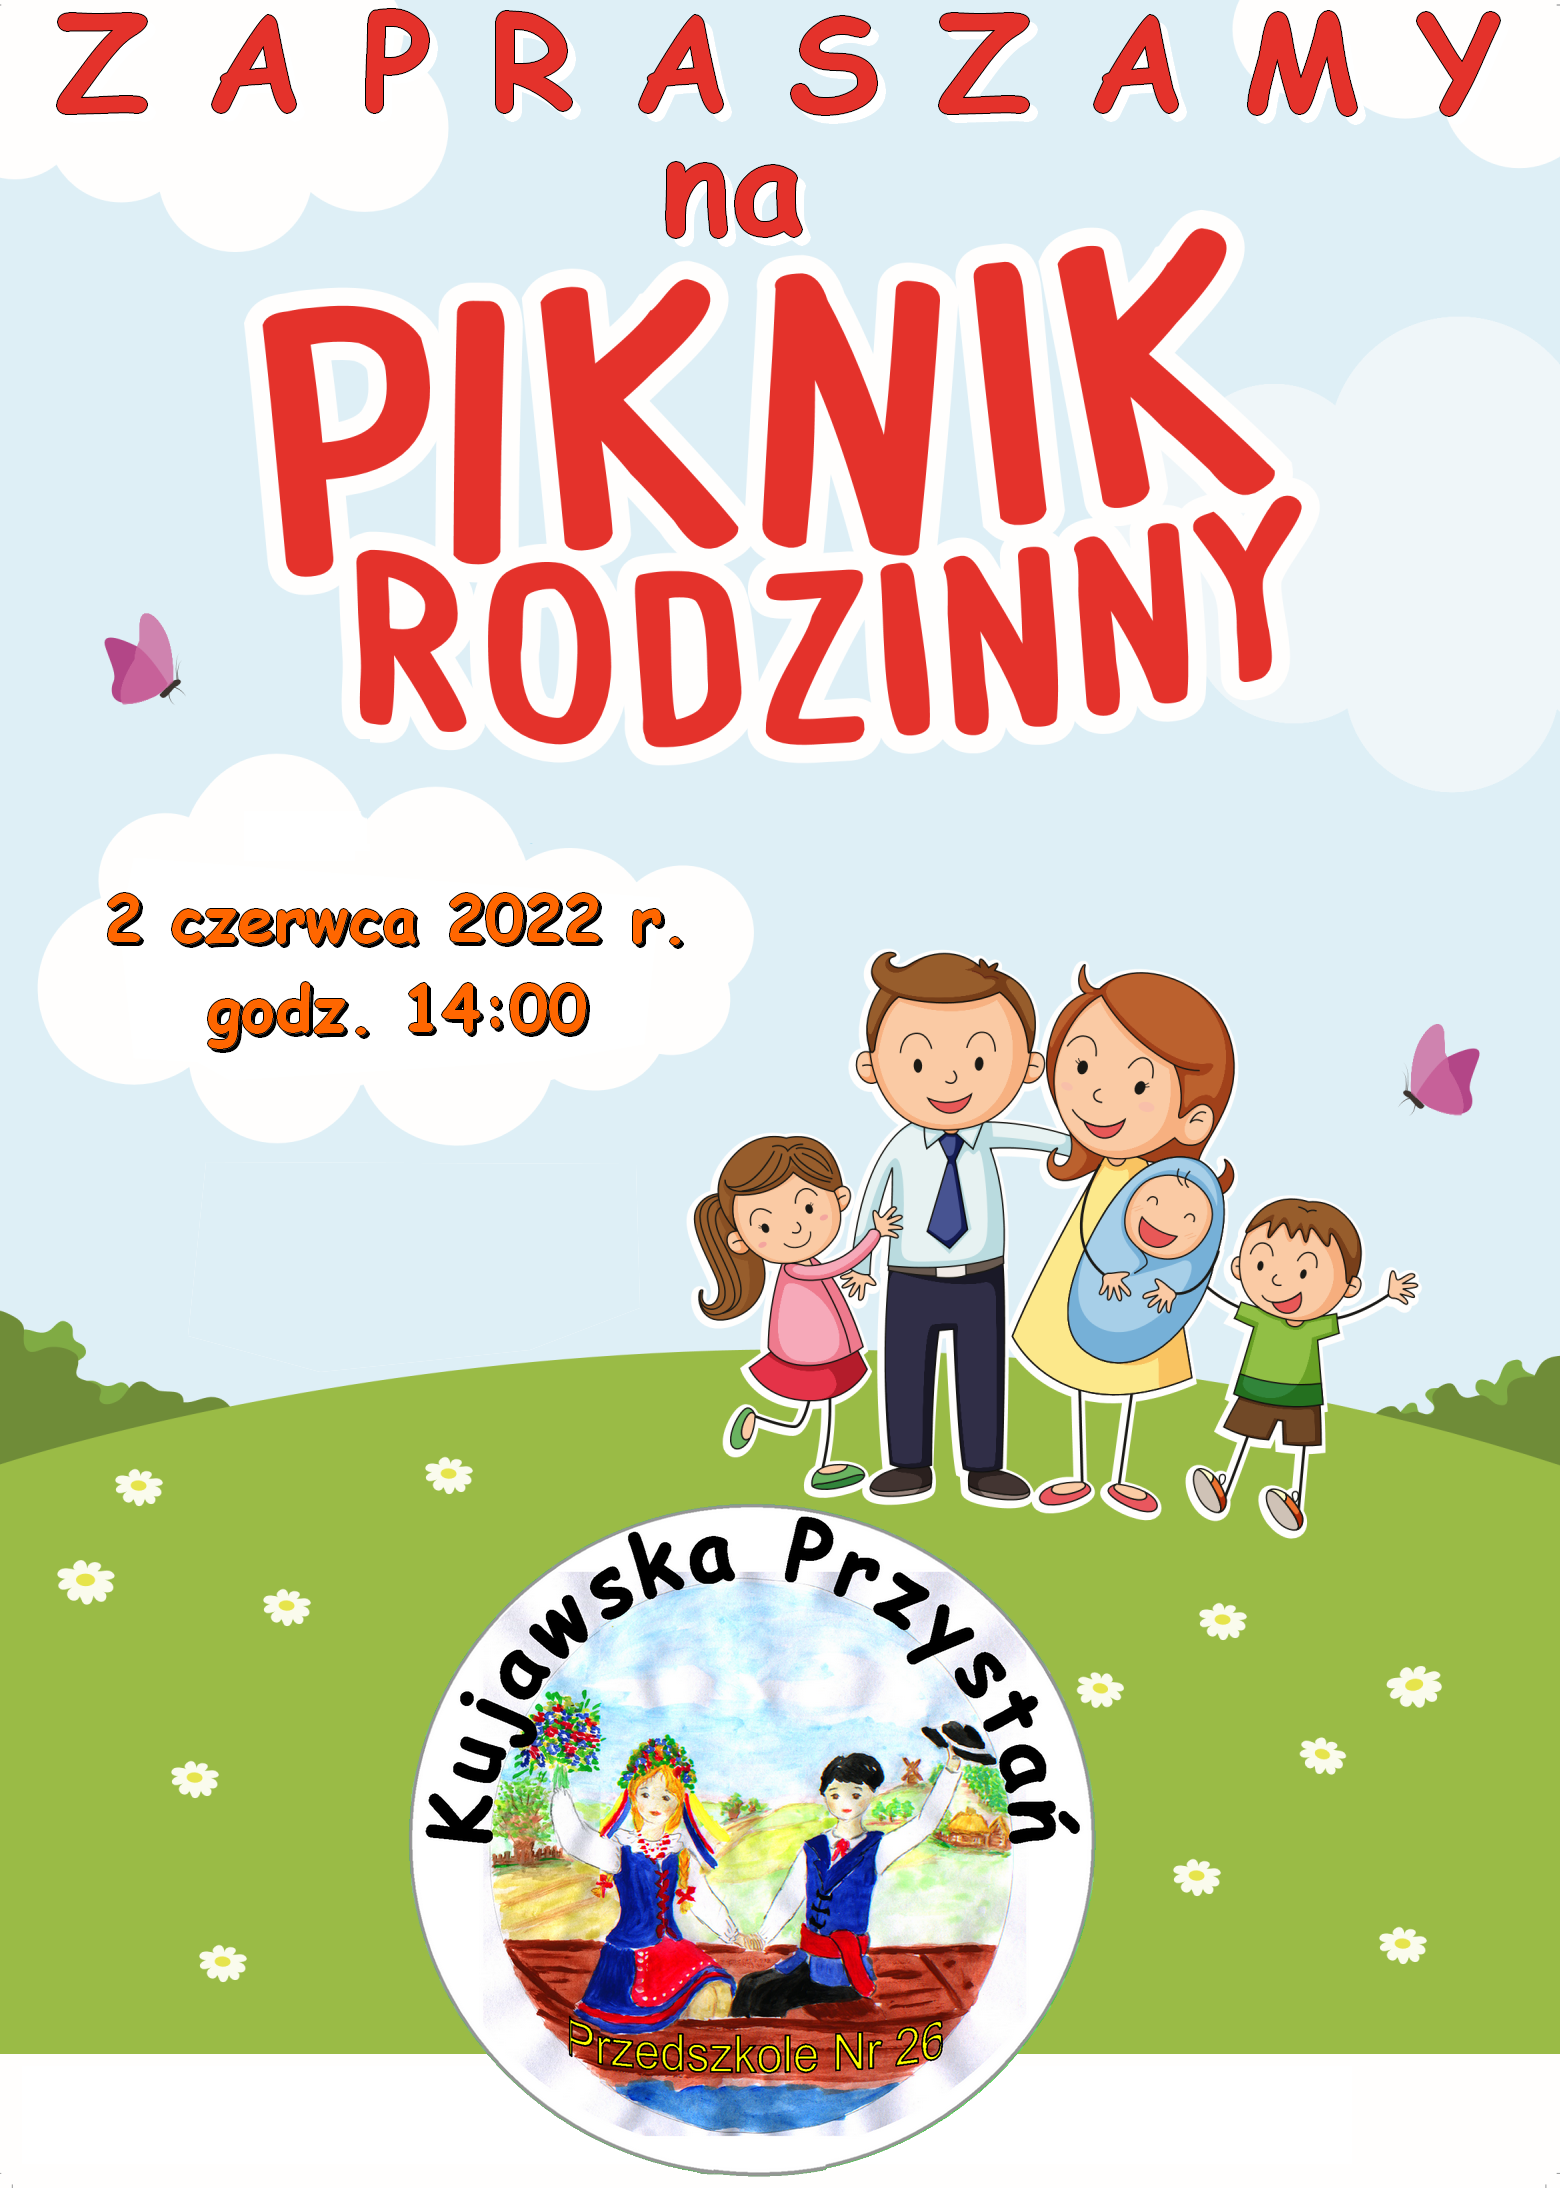 Piknik Rodzinny - 2 czerwca 2022 r.